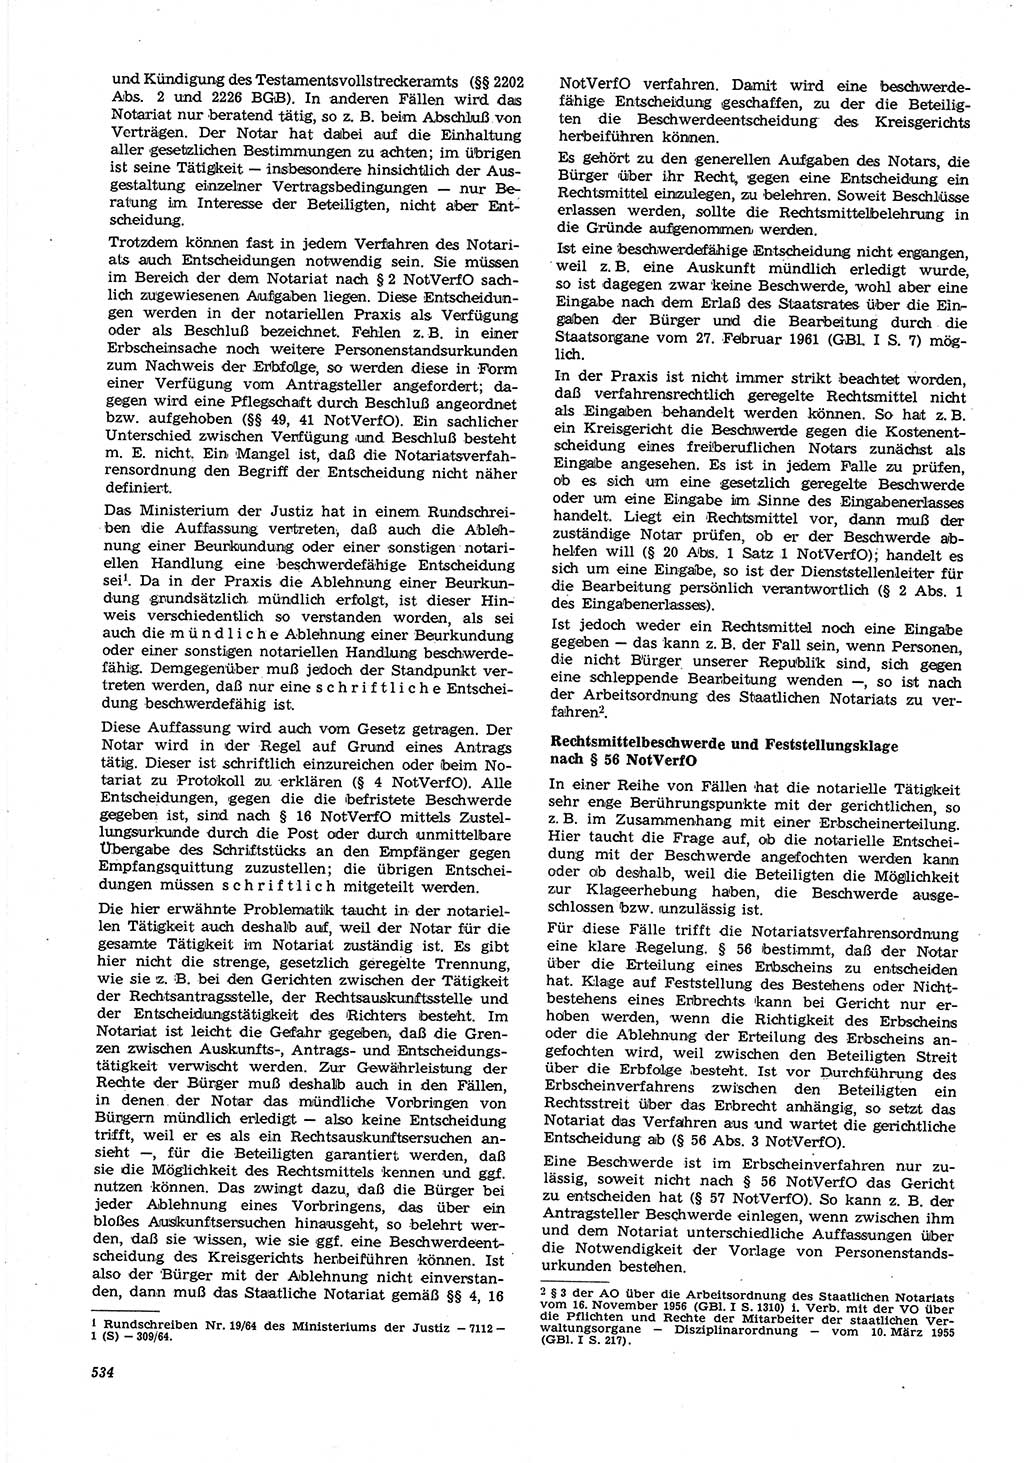 Neue Justiz (NJ), Zeitschrift für Recht und Rechtswissenschaft [Deutsche Demokratische Republik (DDR)], 21. Jahrgang 1967, Seite 534 (NJ DDR 1967, S. 534)